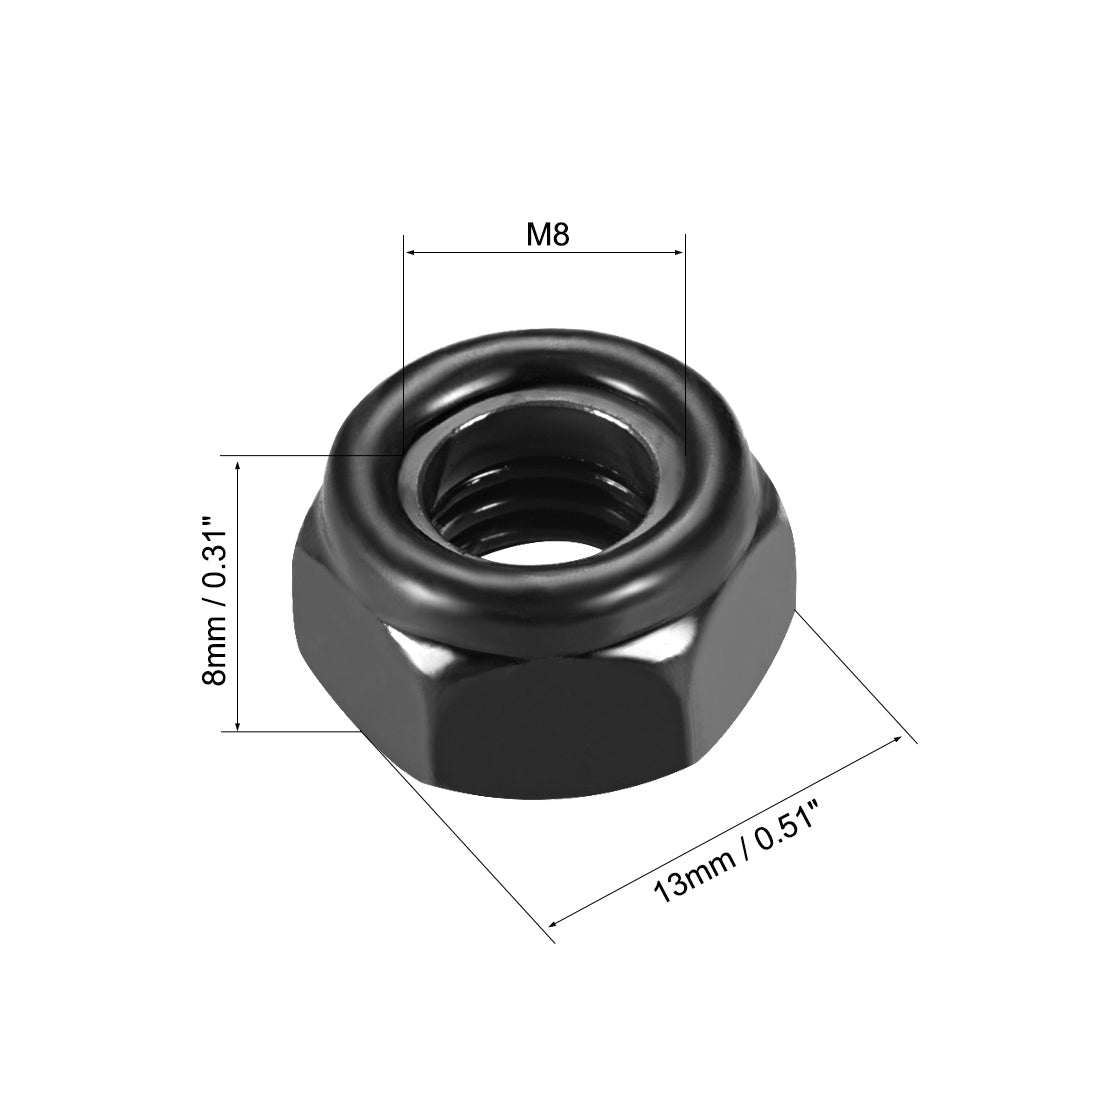 uxcell Uxcell M8x1.25mm Hex Lock Nuts Carbon Steel Nylon Insert Self-Lock Nuts, 50Pcs Black